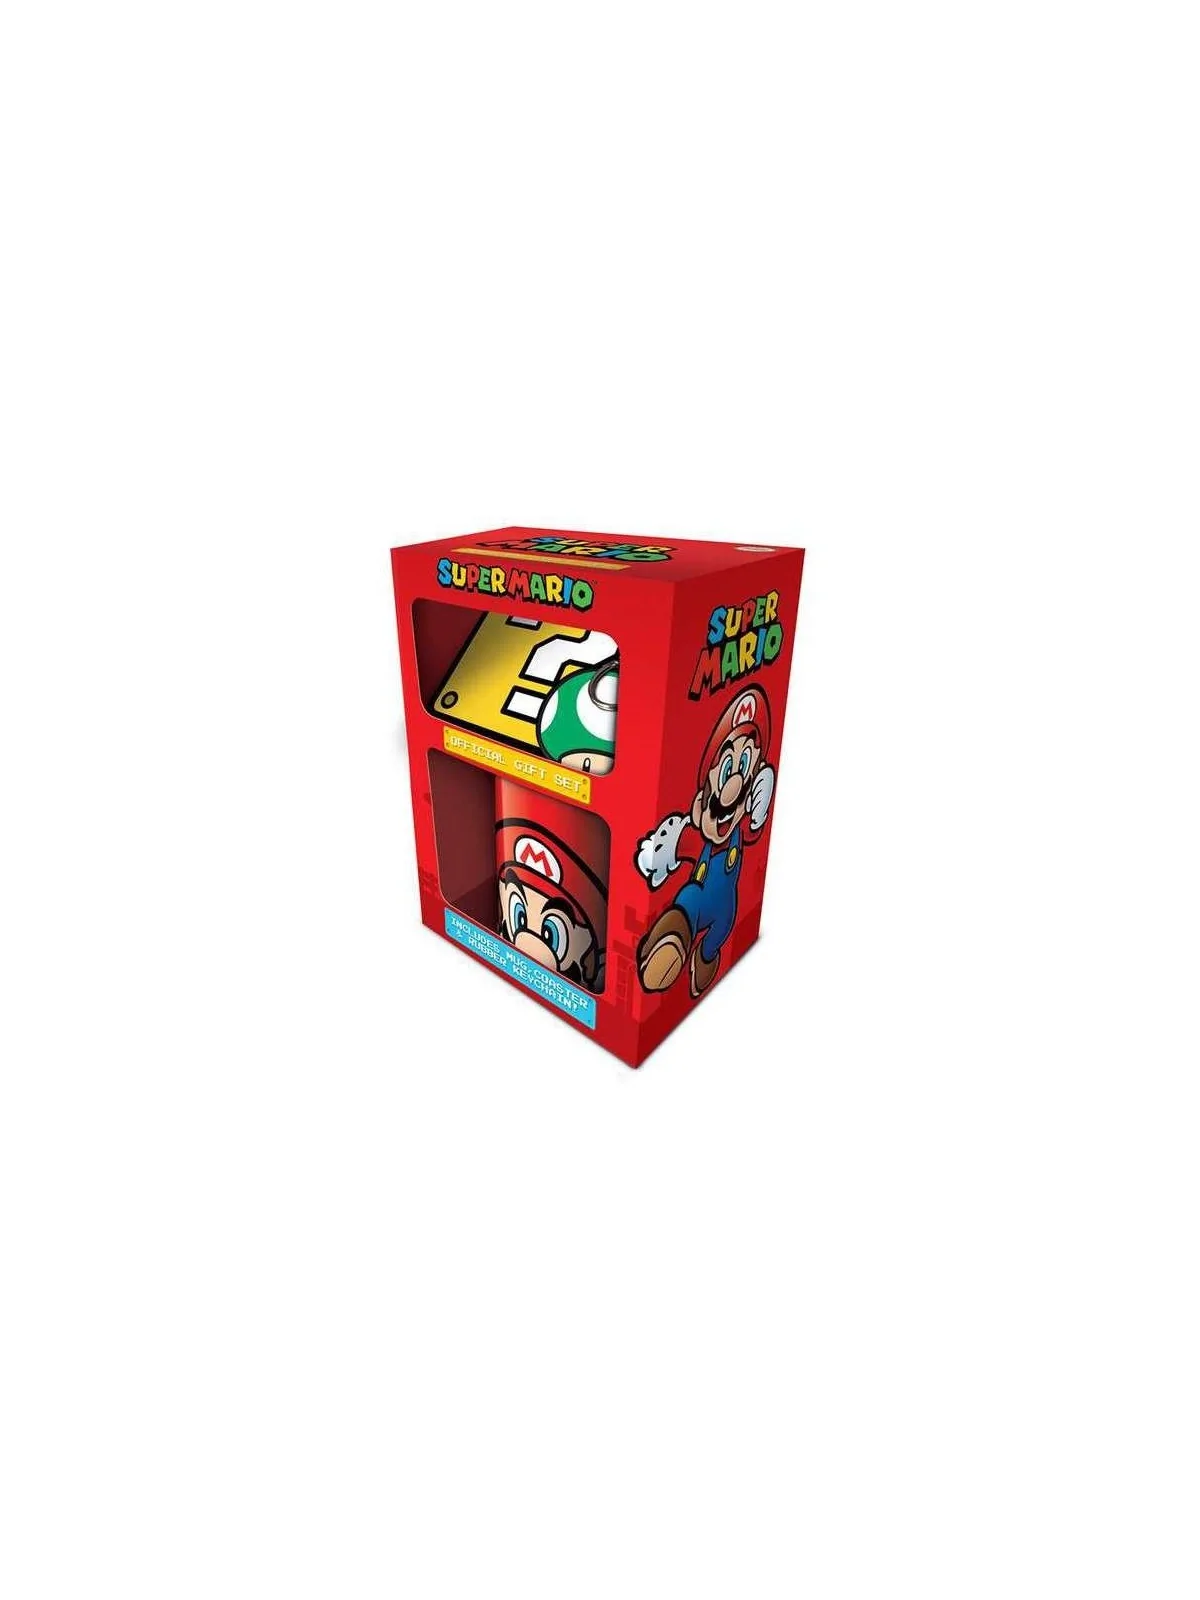 Comprar Set de Regalo Super Mario Bros barato al mejor precio 15,99 € 